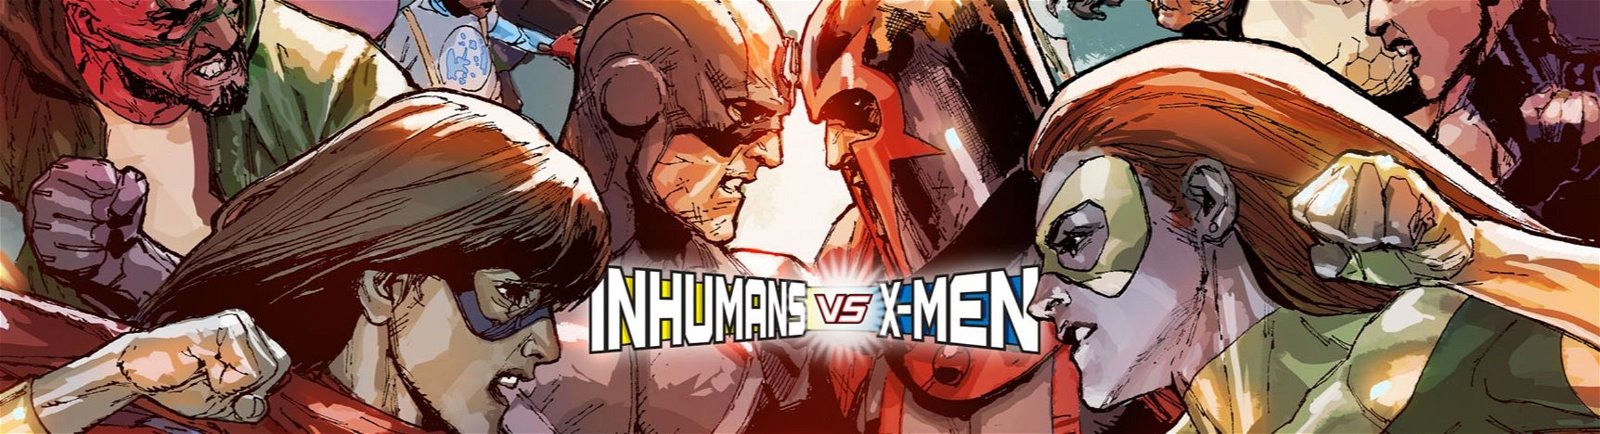 Inhumans VS X-Men